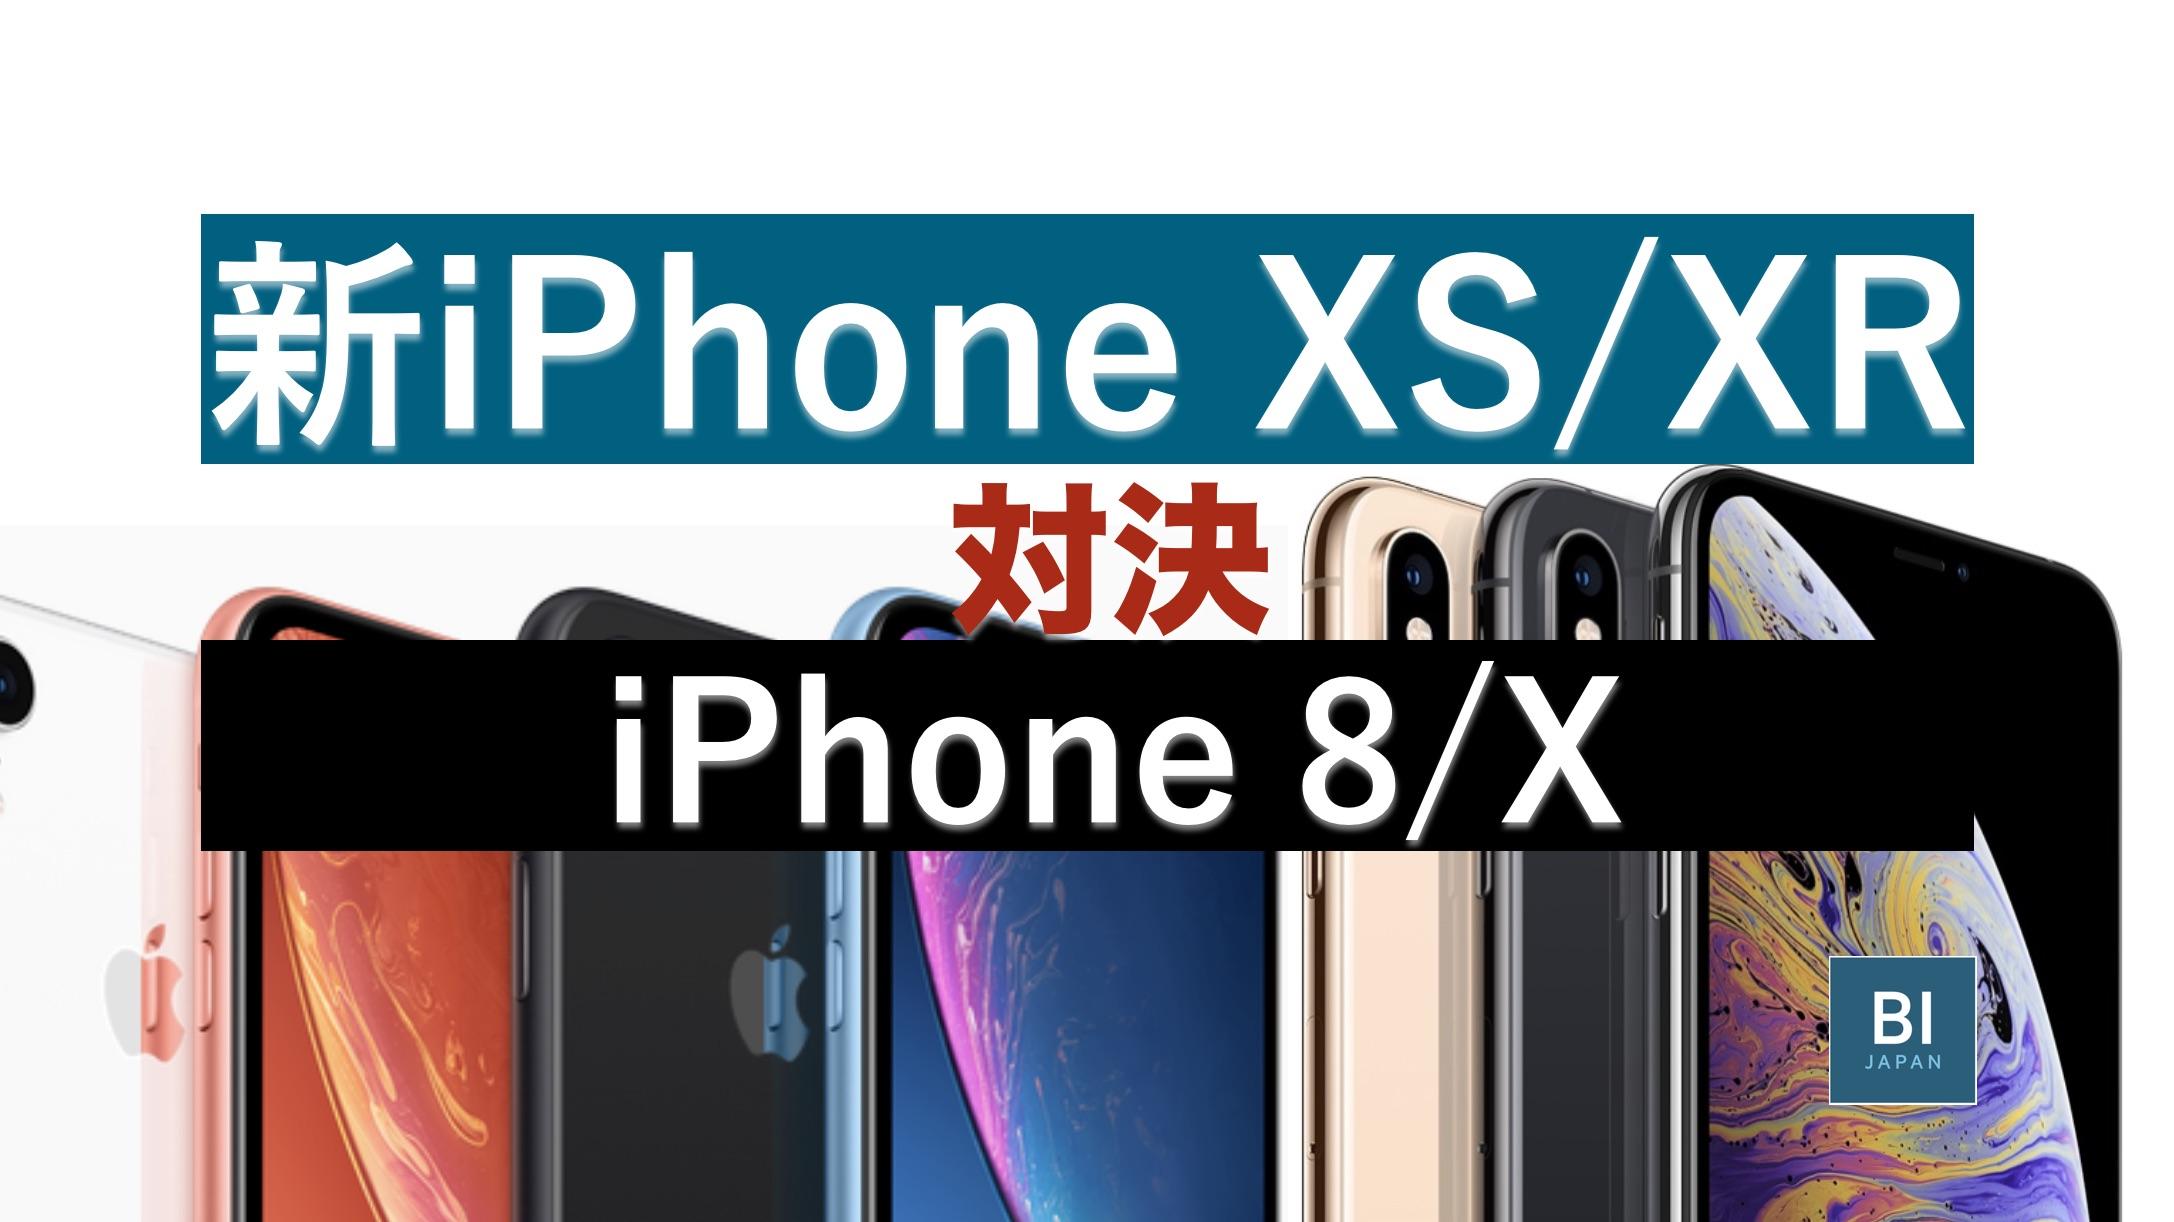 違いは？ iPhone XS/XR 対 iPhone X/8 比較表で見えた｢新世代｣性能 ...